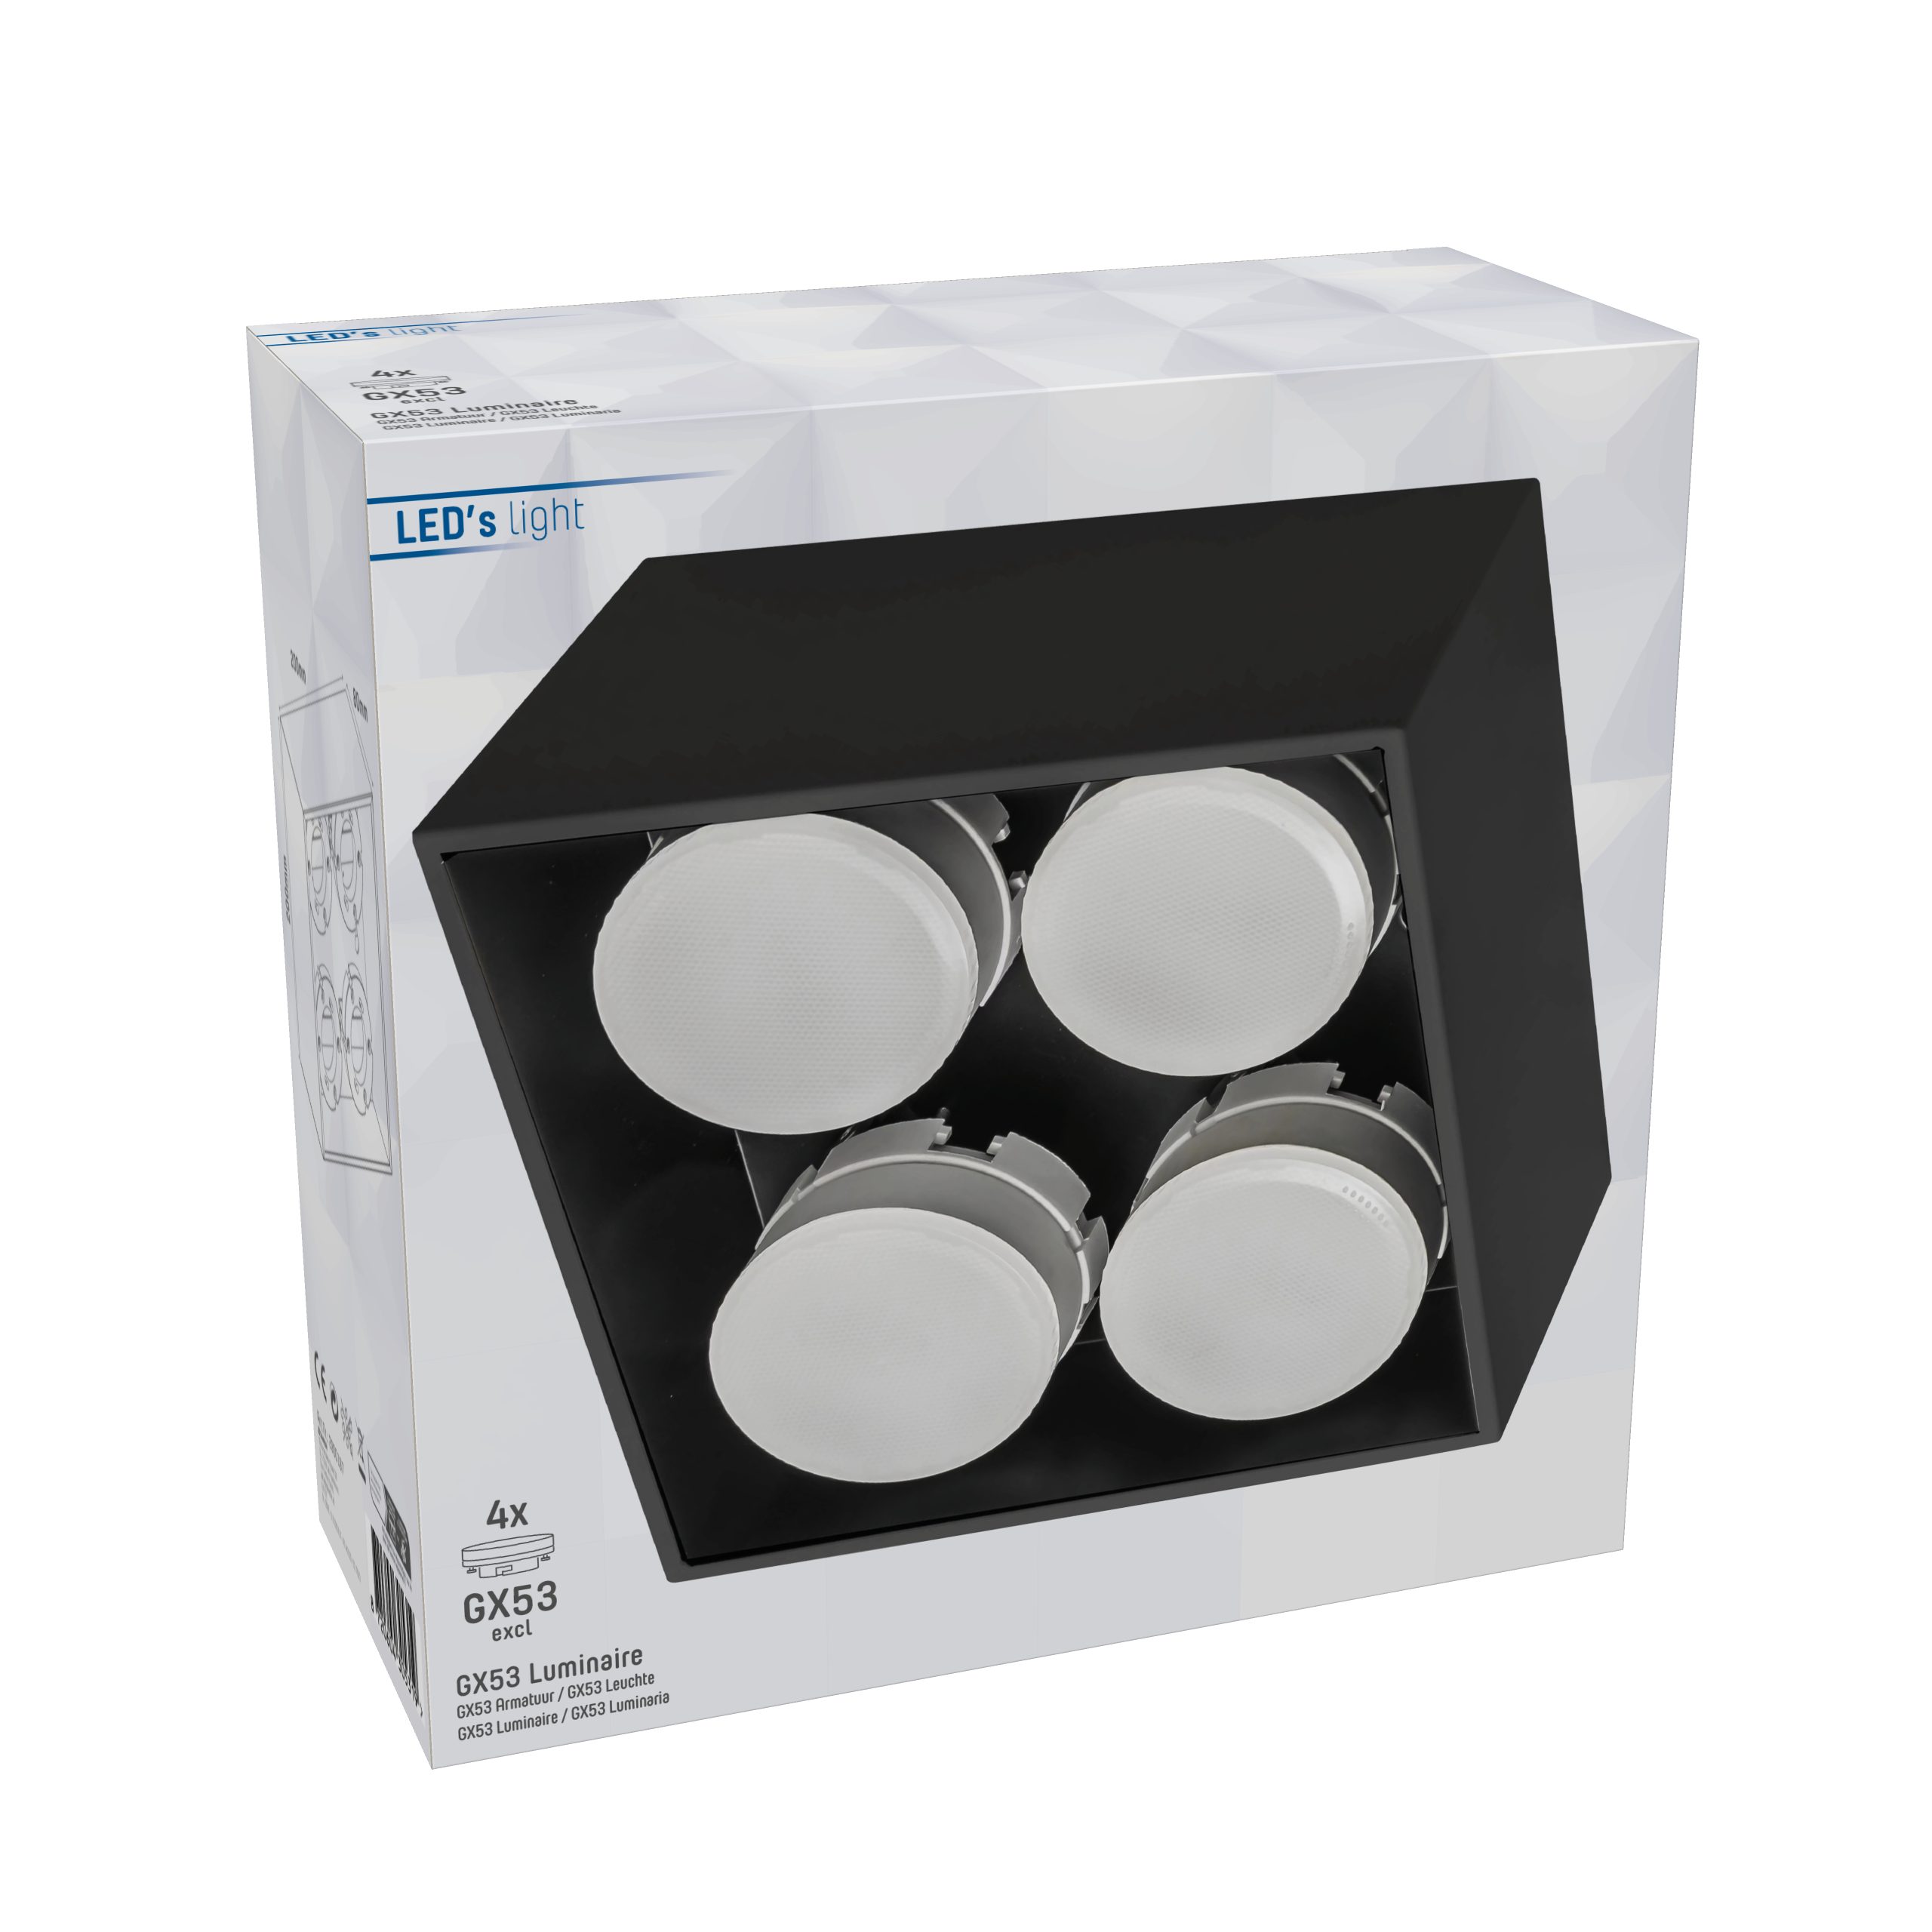 LED's light LED 12W Deckenleuchte 4x schwarz bis 2900197 Deckenleuchte, LED, GX53